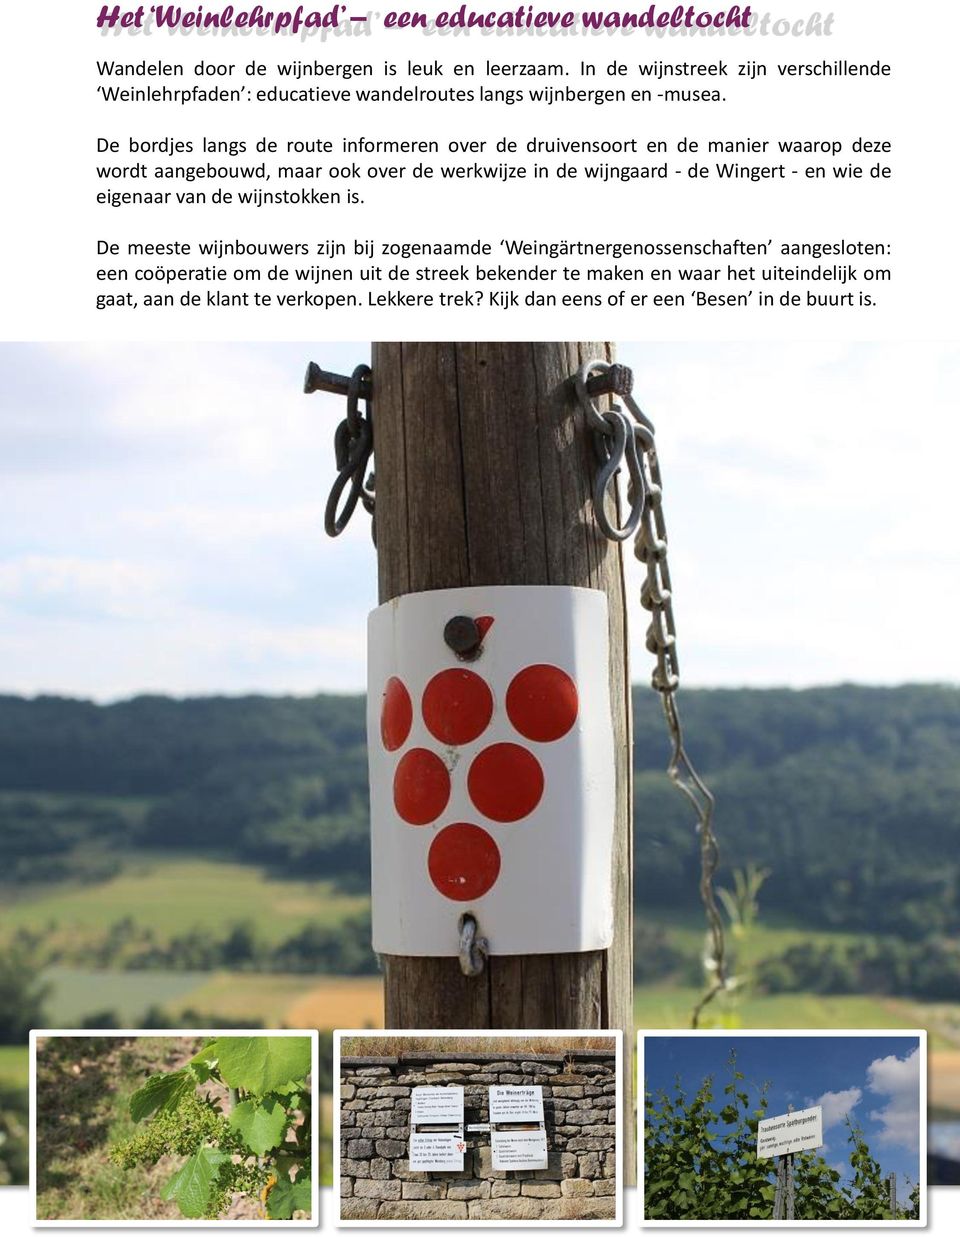 De bordjes langs de route informeren over de druivensoort en de manier waarop deze wordt aangebouwd, maar ook over de werkwijze in de wijngaard - de Wingert - en